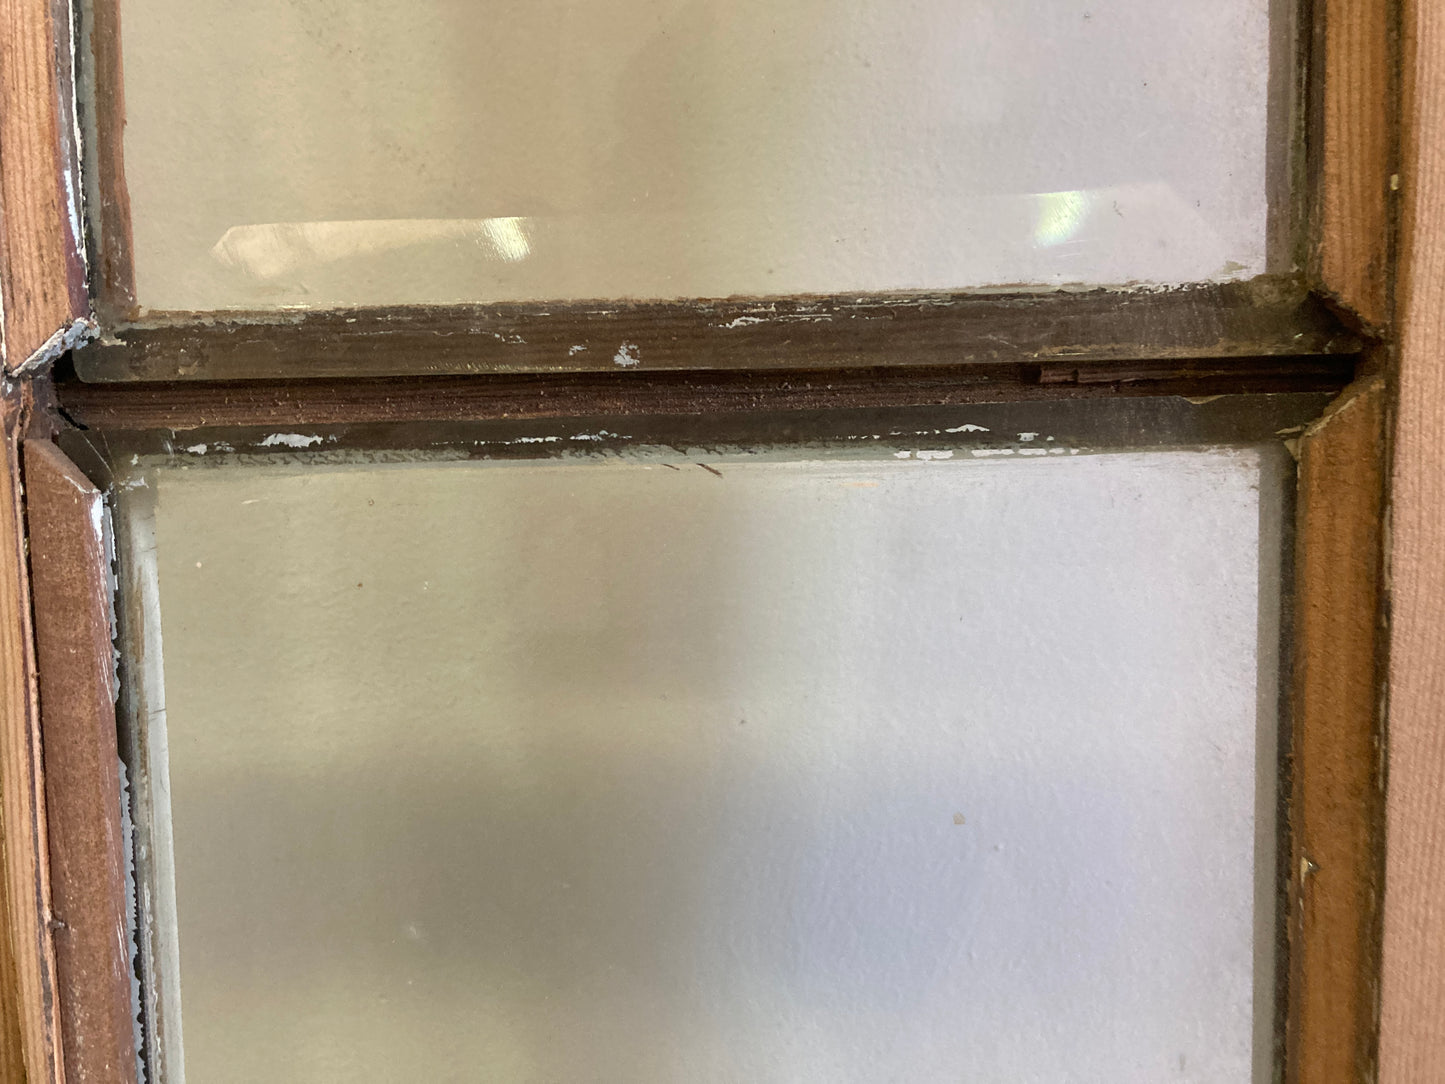 Houten binnendeur met glas - afgeschuurd (206 x 82)